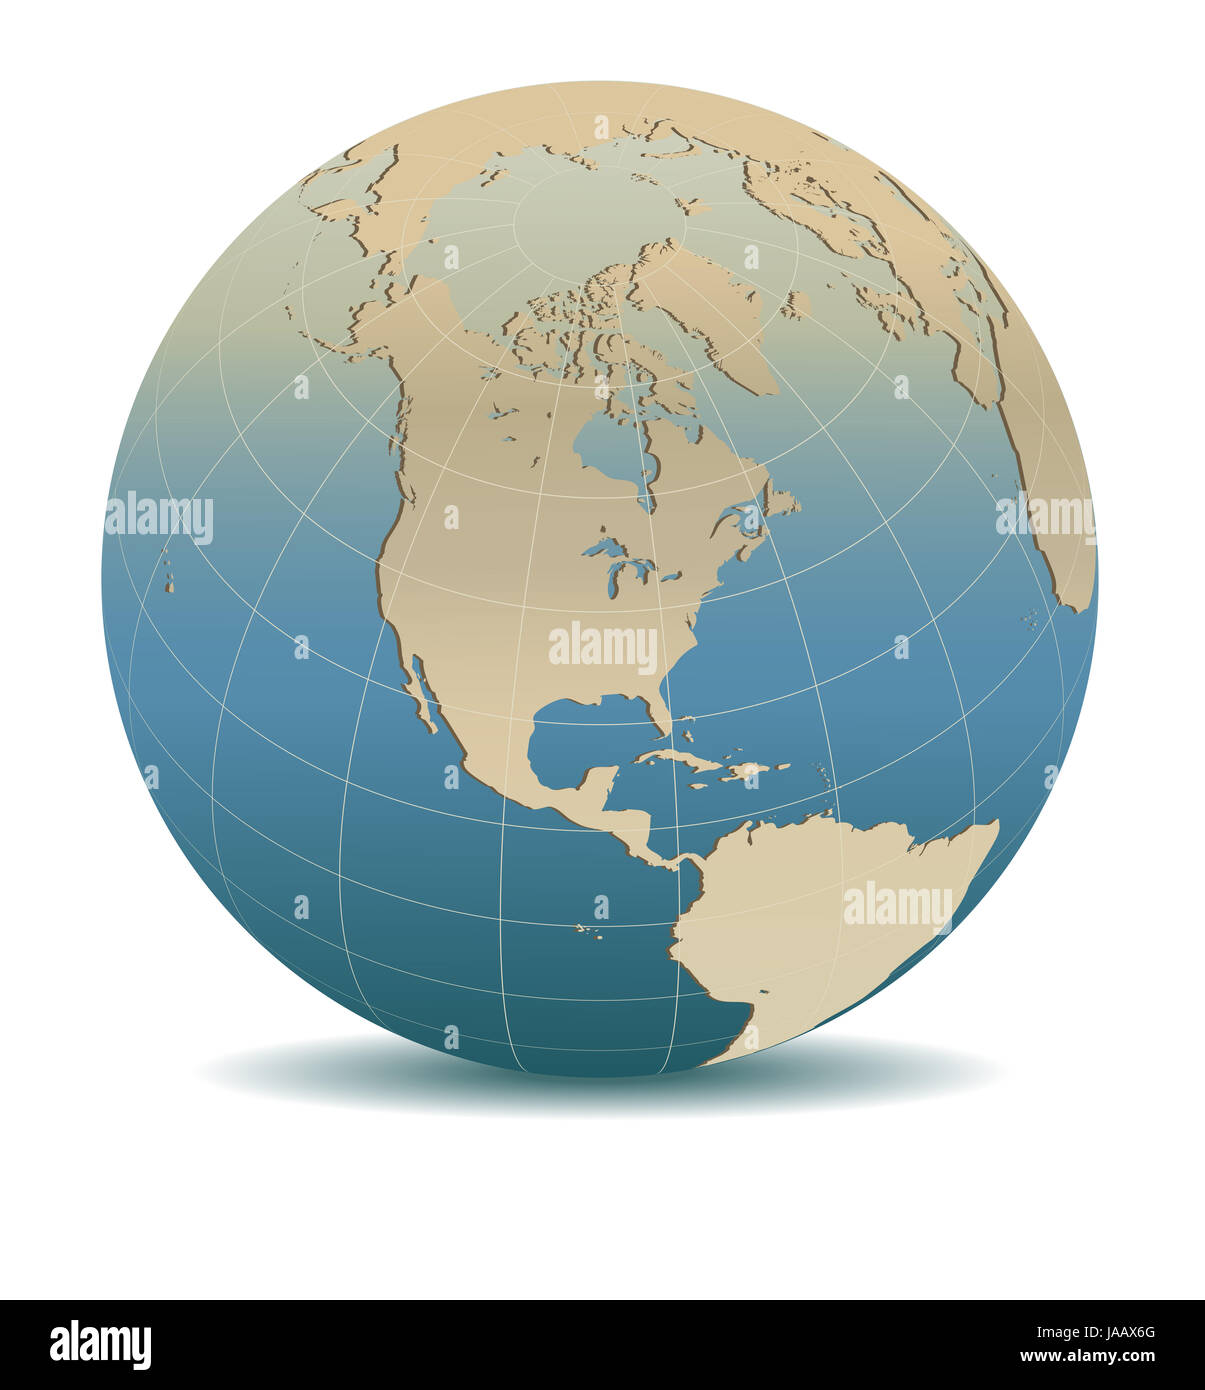 Retro Style Amérique du Nord, Amérique du Sud et Amérique Centrale, monde global, les éléments de cette image fournie par la NASA Banque D'Images